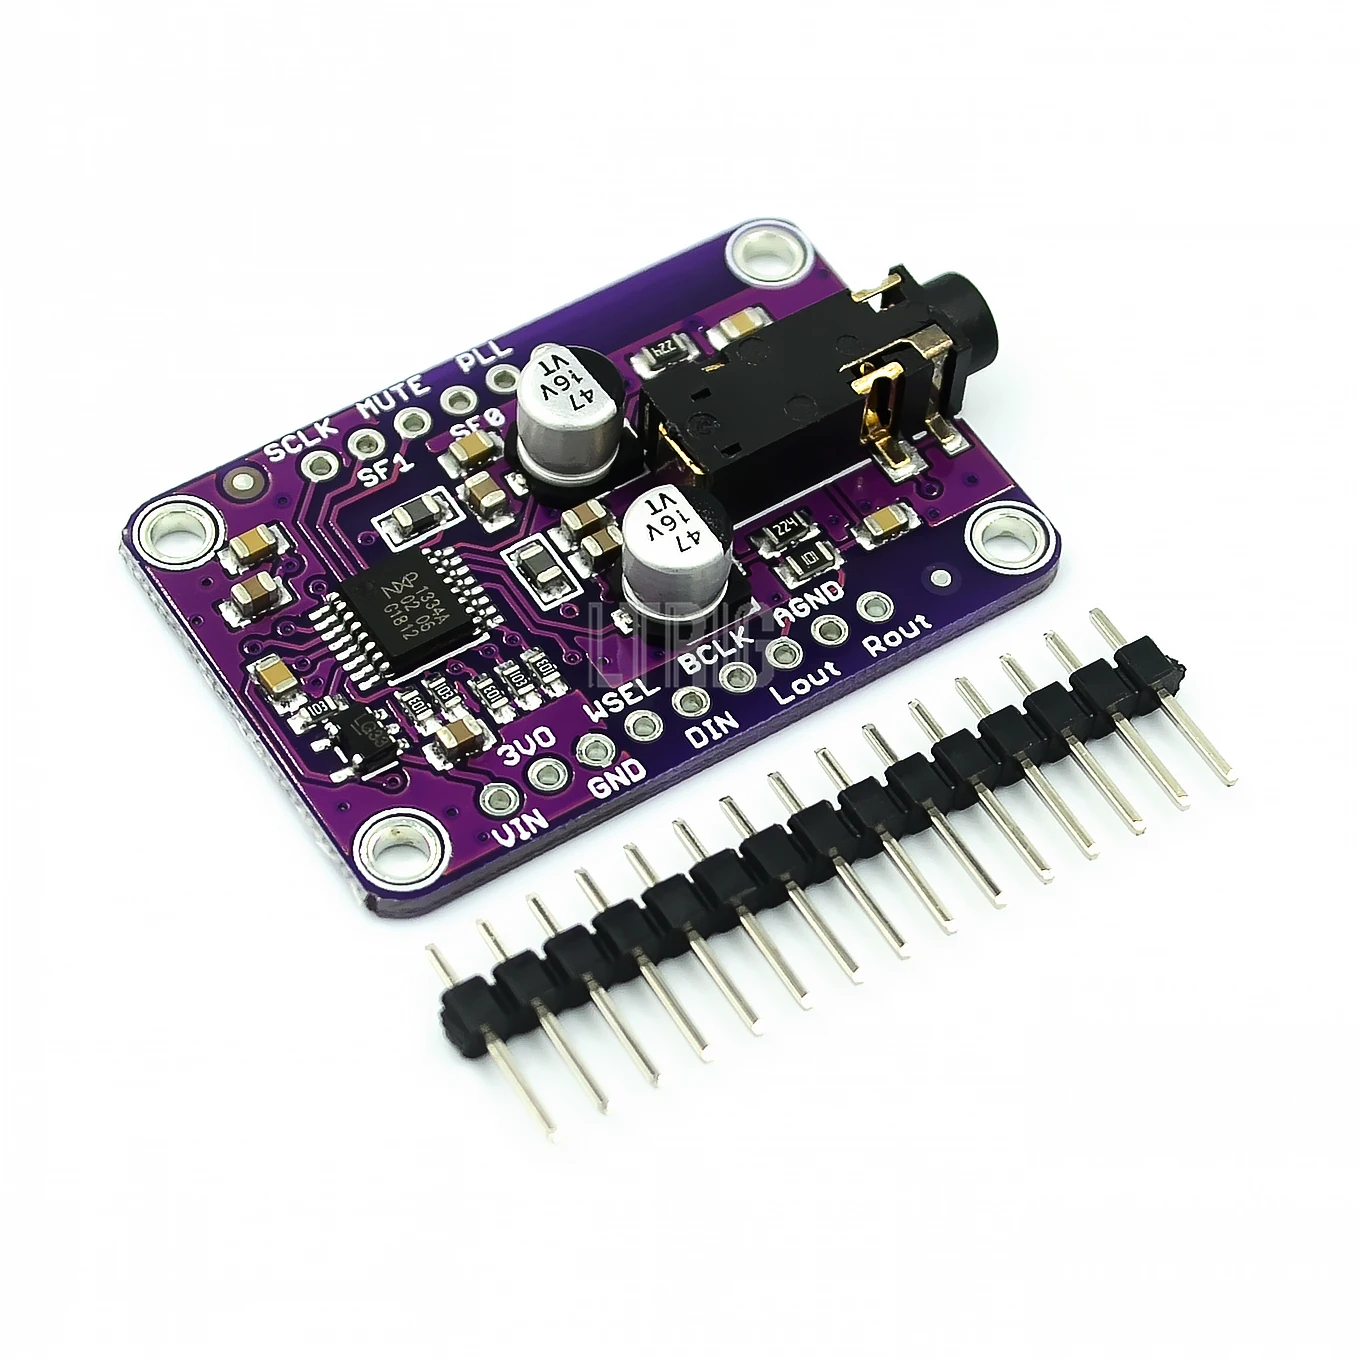 

LTRIG Custom 1PCSCJMCU-1334 DAC Module CJMCU-1334 UDA1334A I2S DAC Audio Stereo Decoder Module Board For Arduino 3.3V - 5V